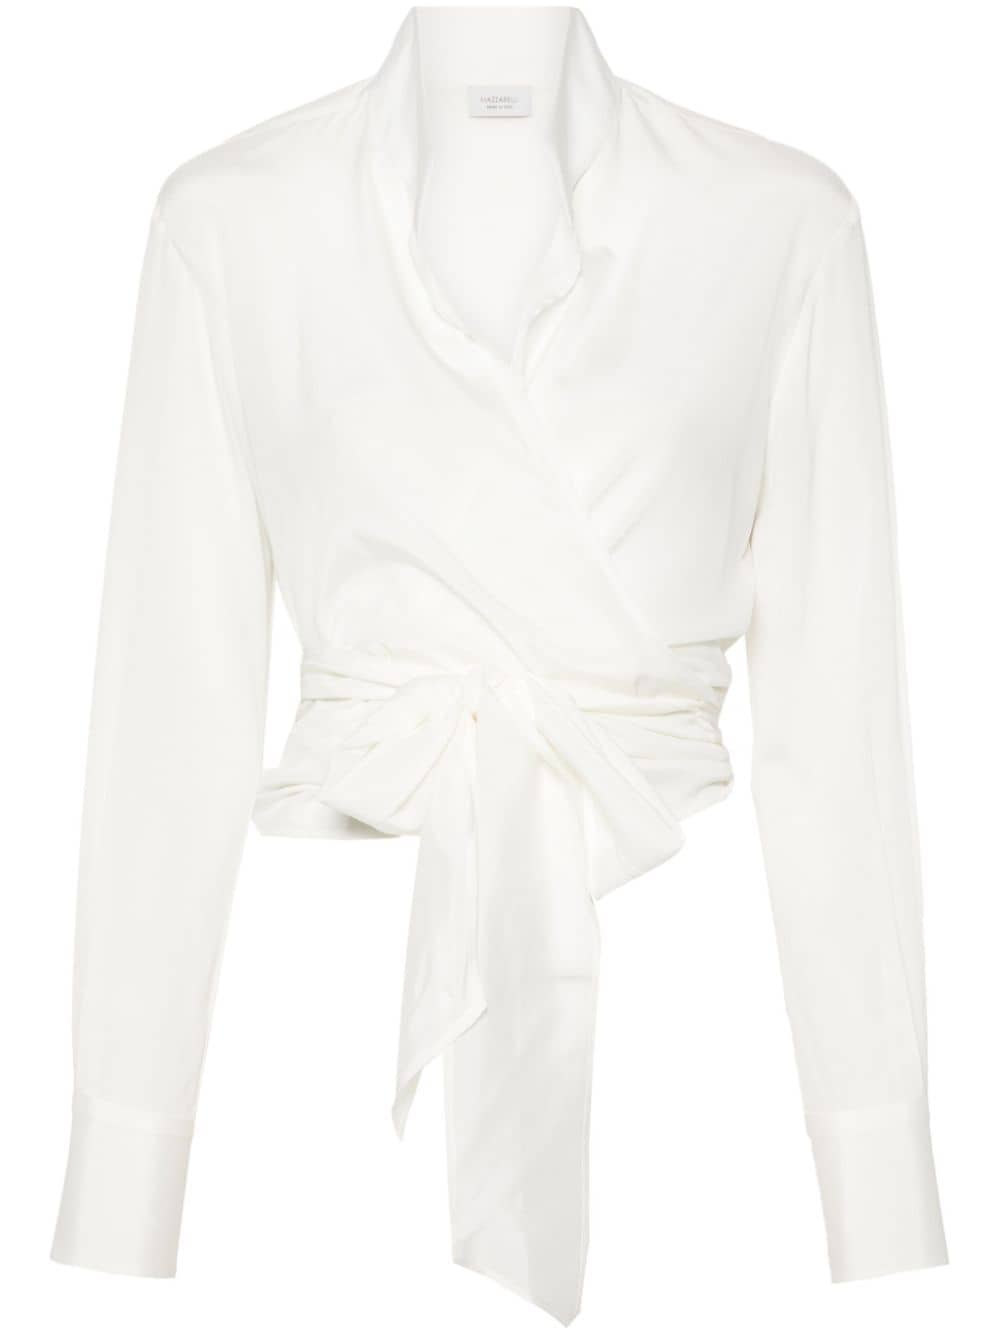 wrap-design blouse